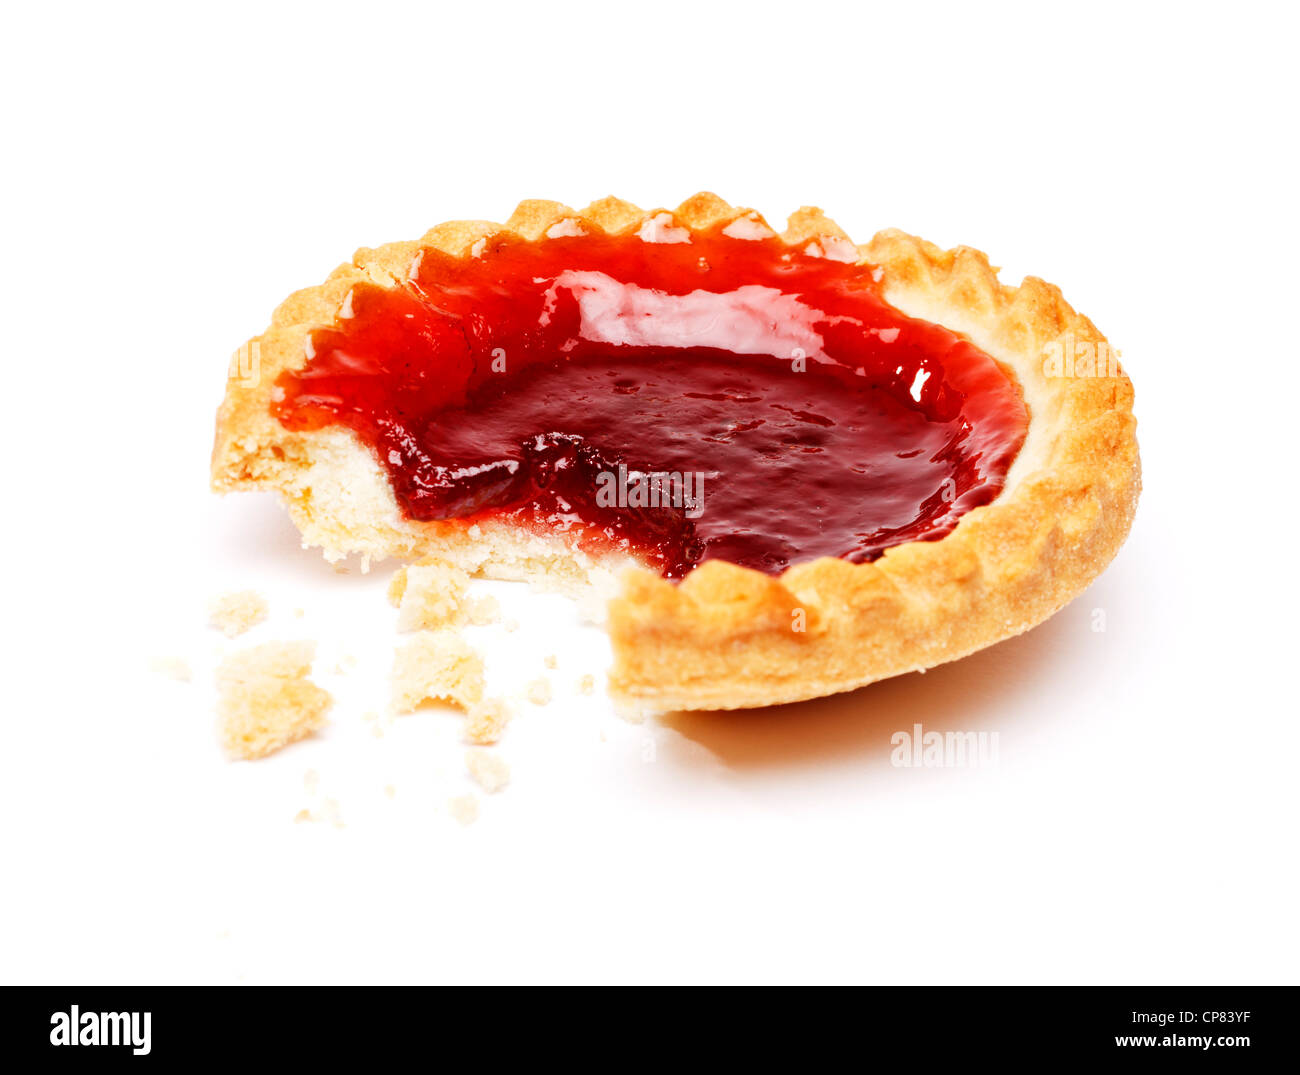 Half eaten jam tart Stock Photo